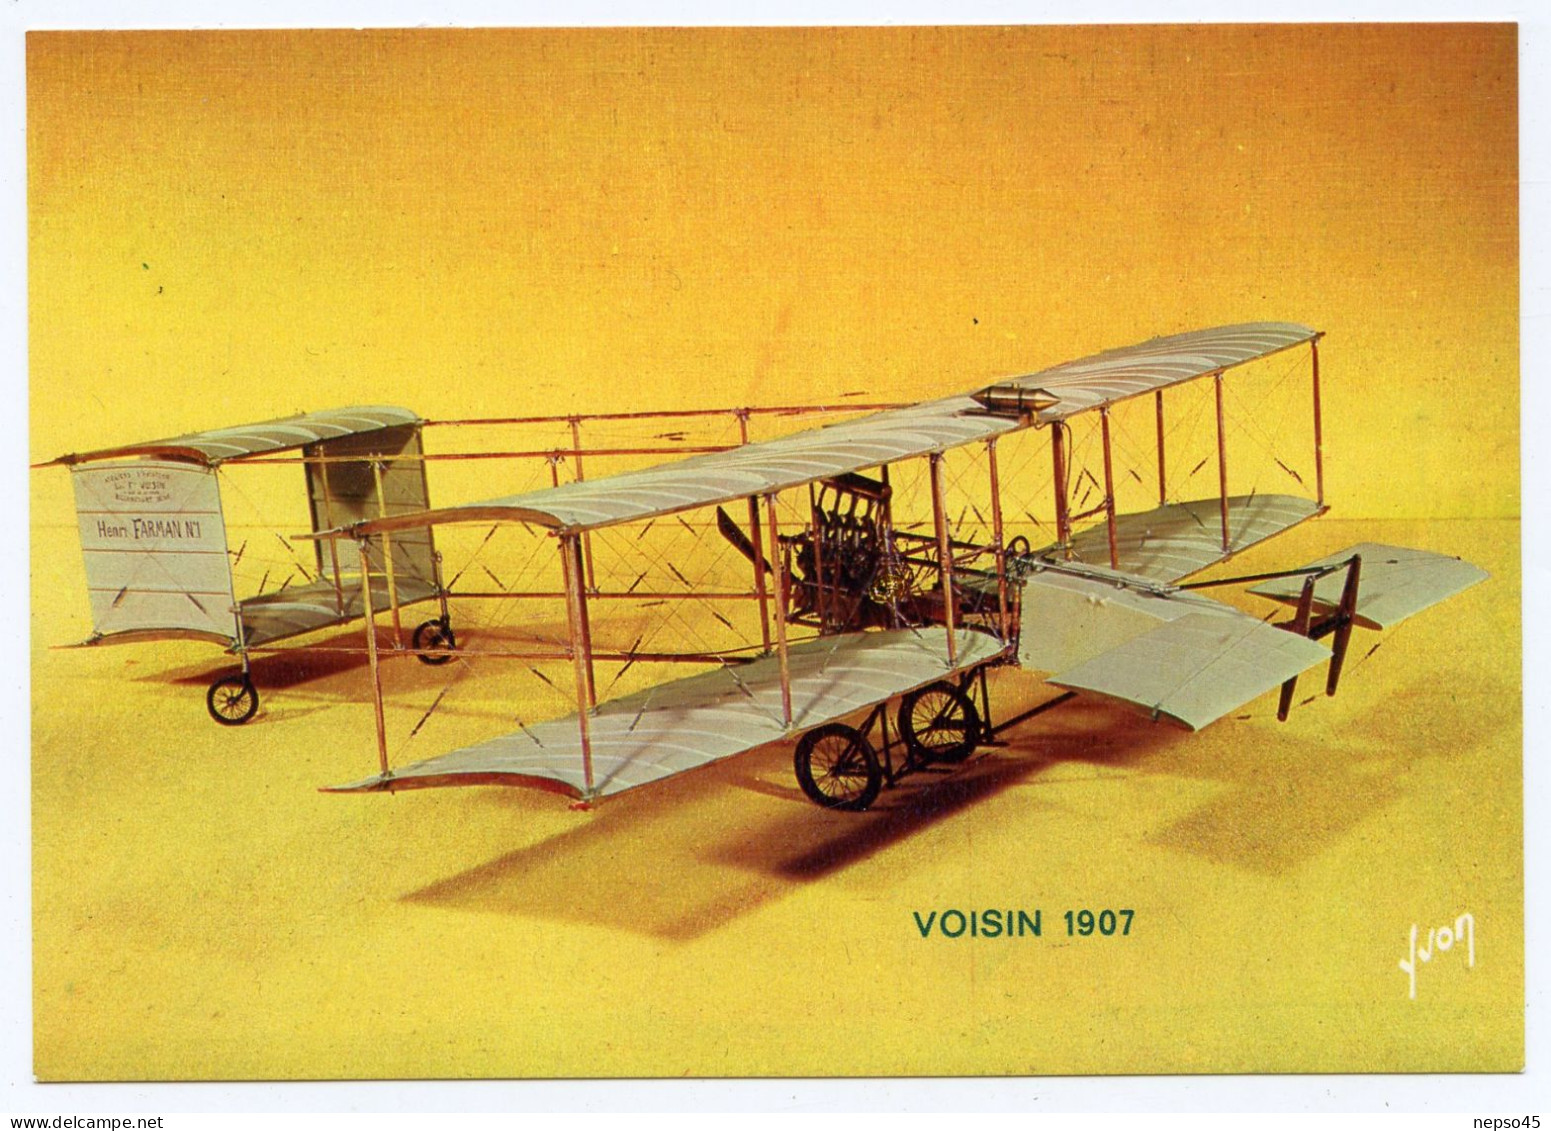 Avion Voisin 1907.collection Du Musée De L'air.Editions D'art Yvon Paris. - 1946-....: Era Moderna